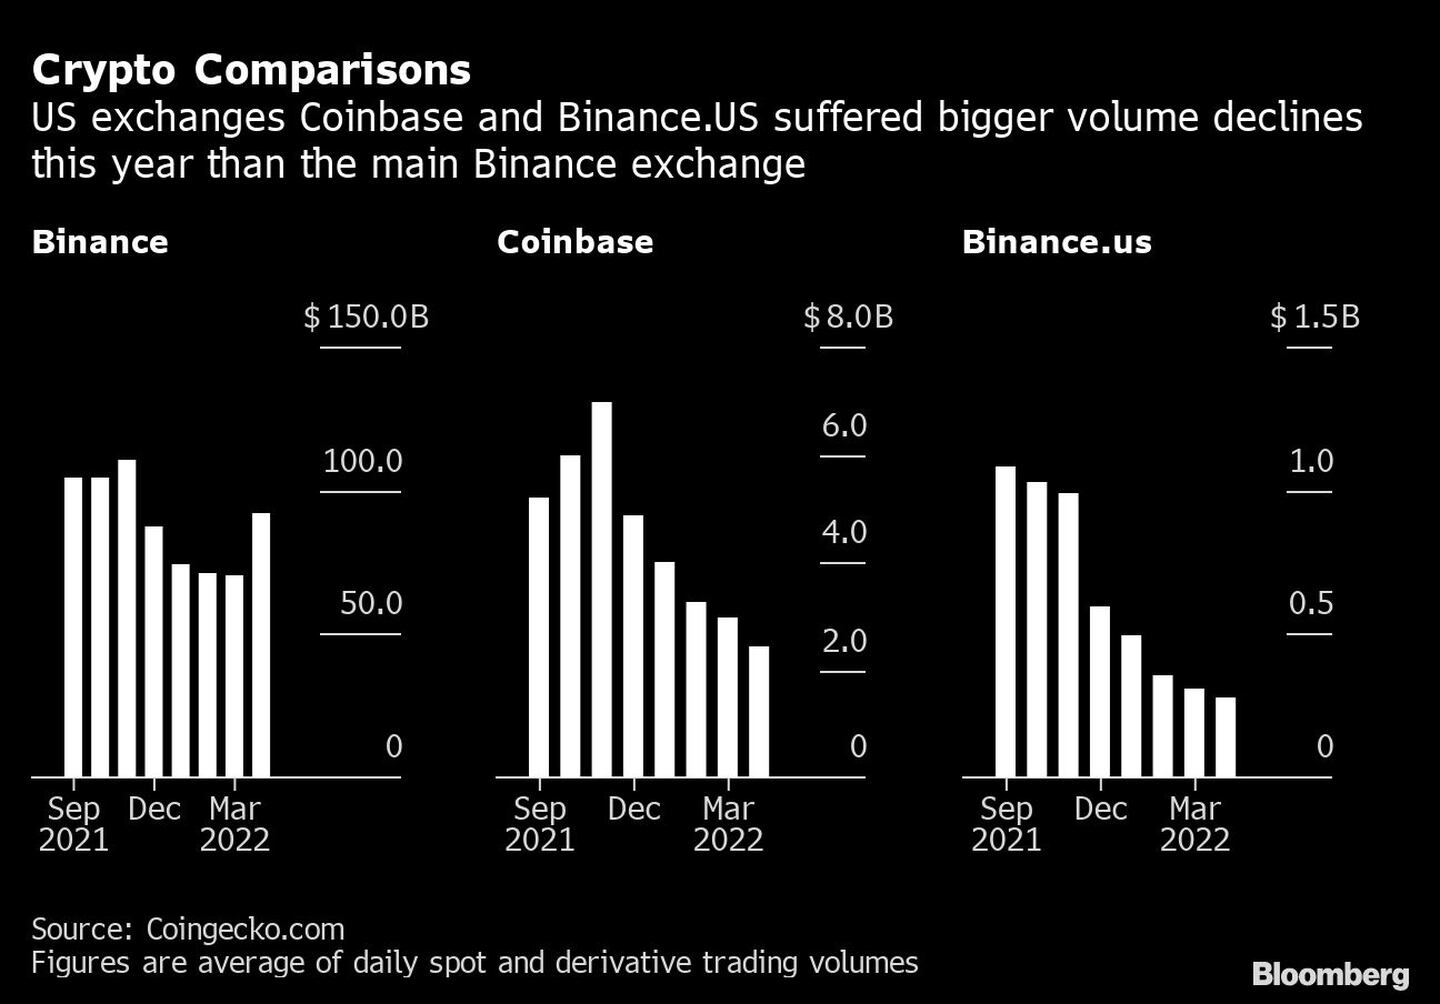 Comparaciones cripto | Las plataformas estadounidenses Coinbase y Binance han sufrido mayores caídas de volumen este año 
dfd